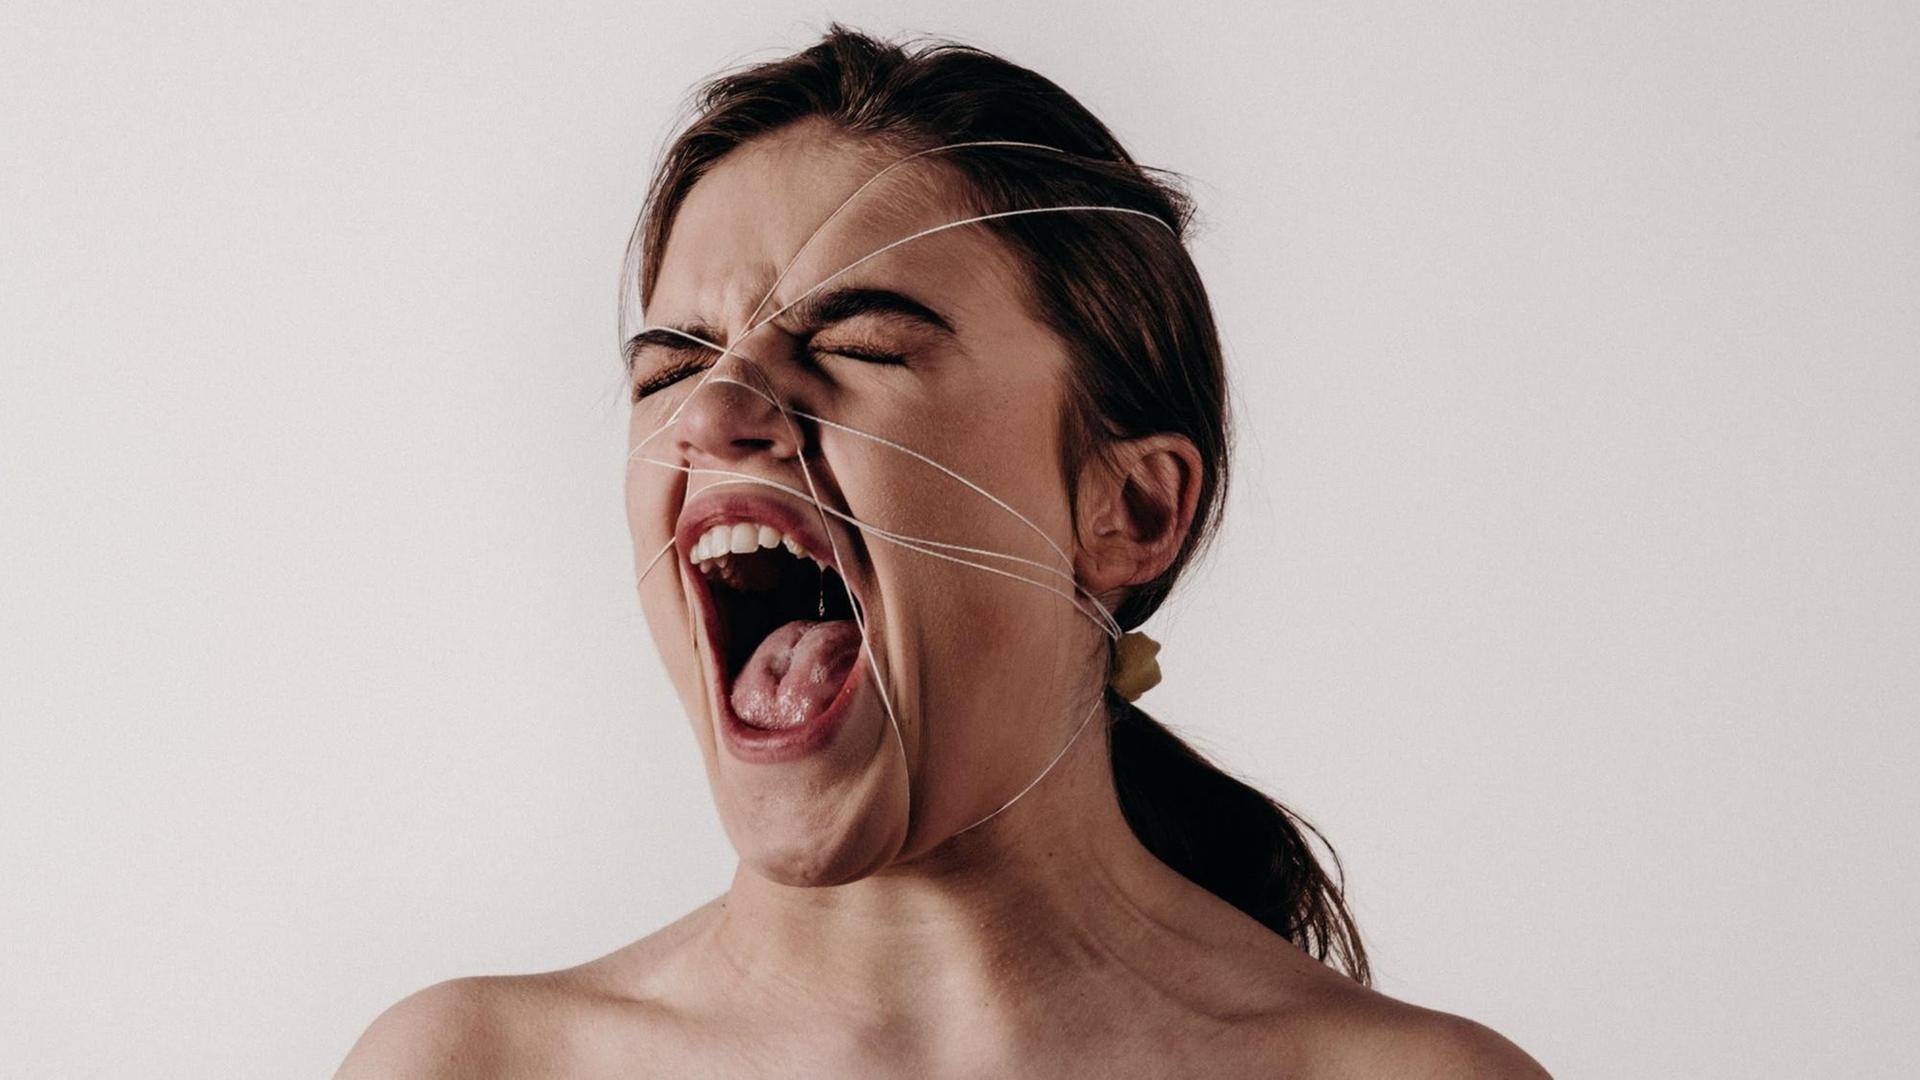 Eine Frau schreit mit weit geöffneten Mund, während ihr Gesicht von Schnüren eingesperrt wird.